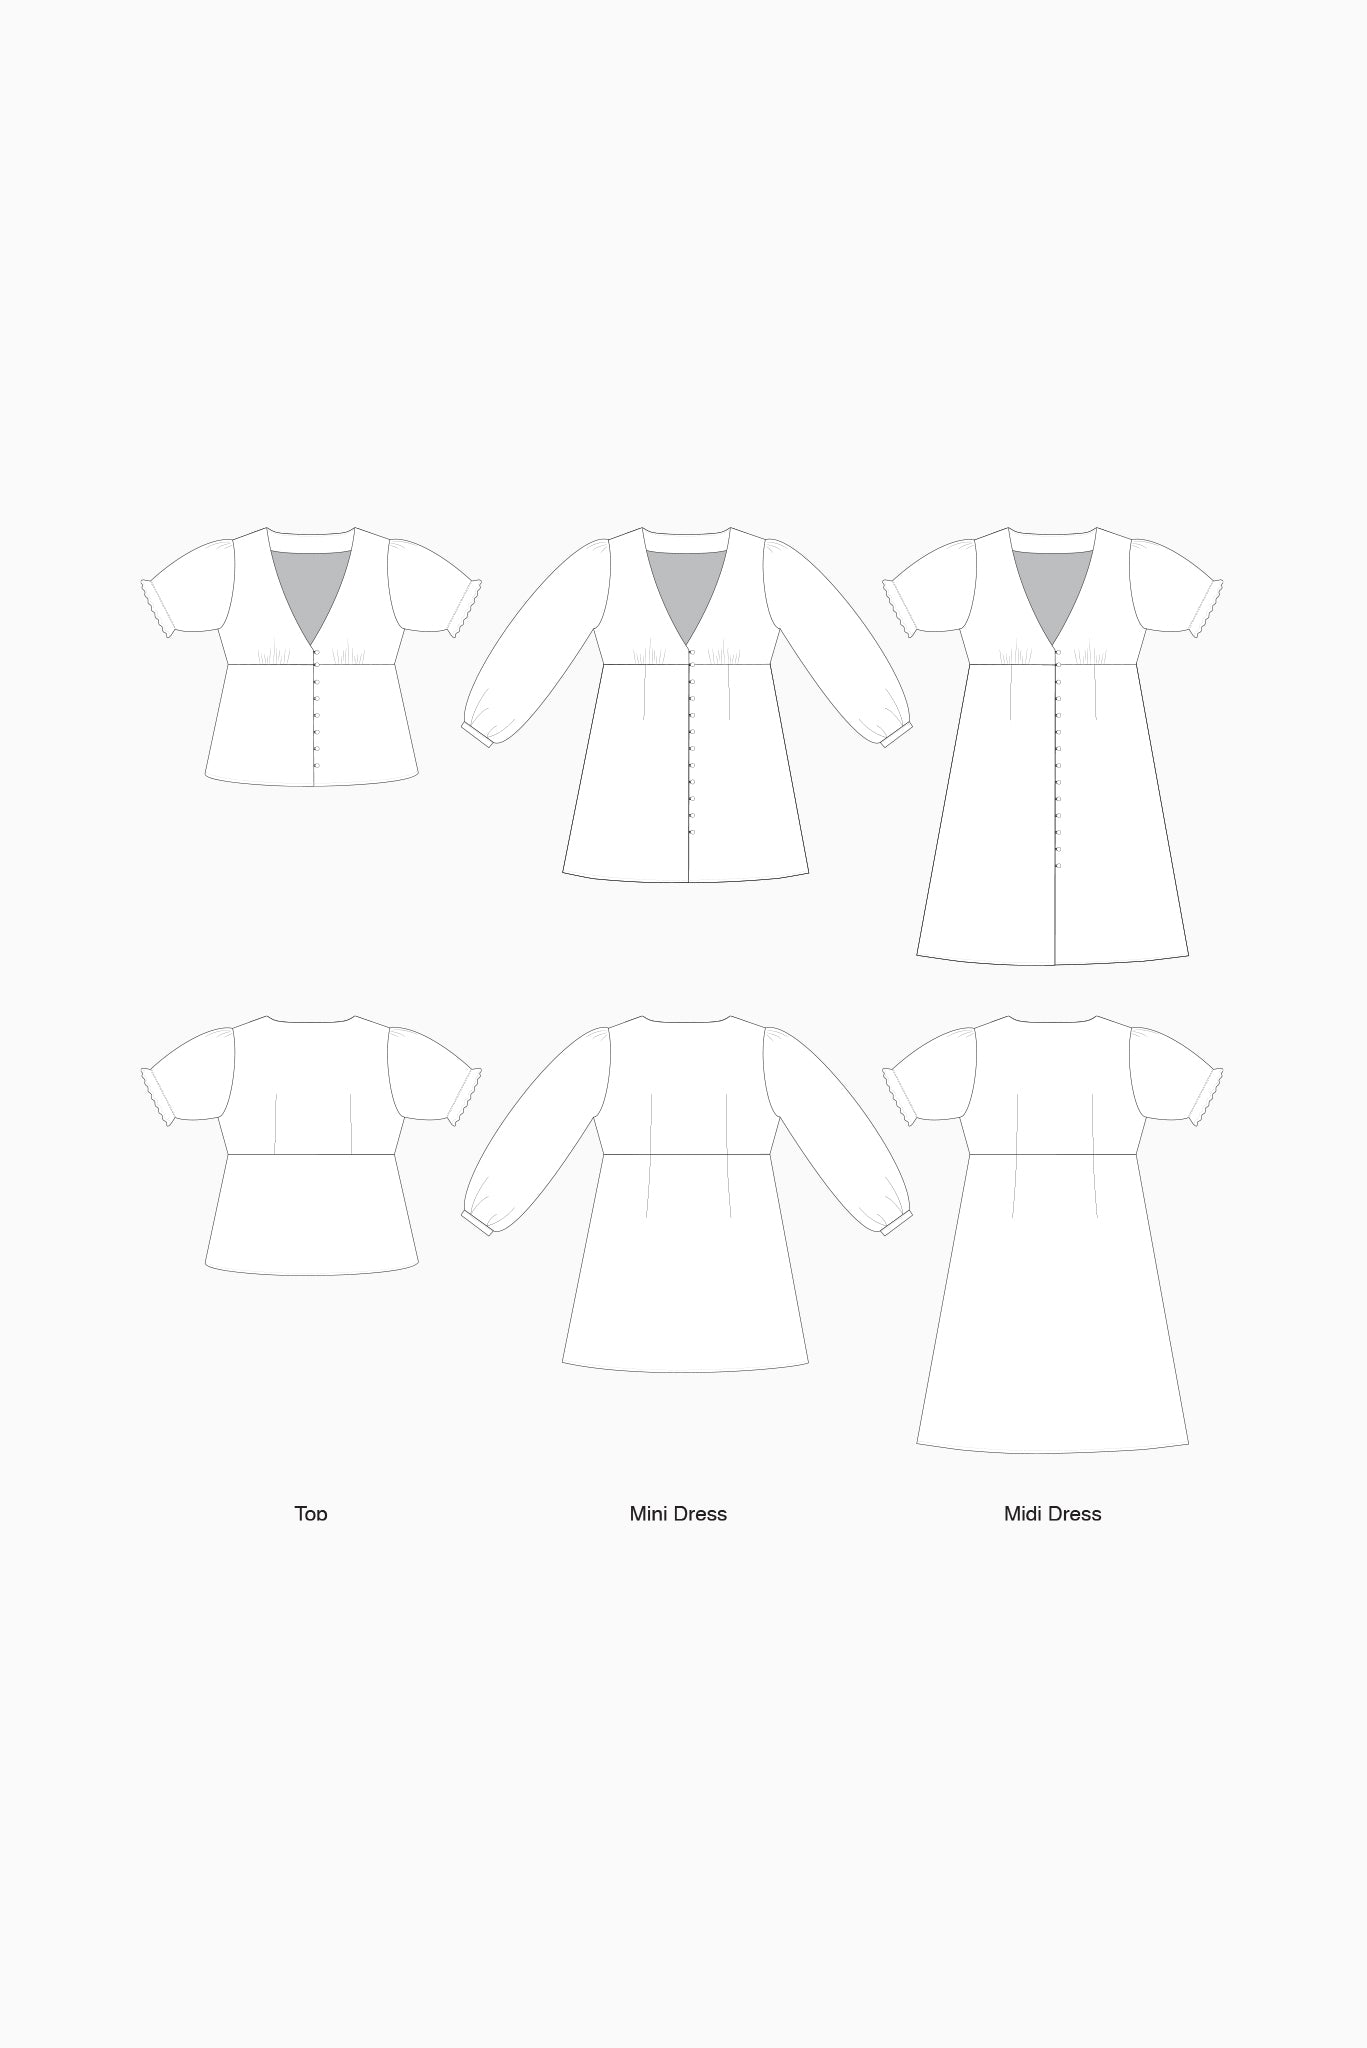 Sandpiper Dress + Top DIGITAL Pattern